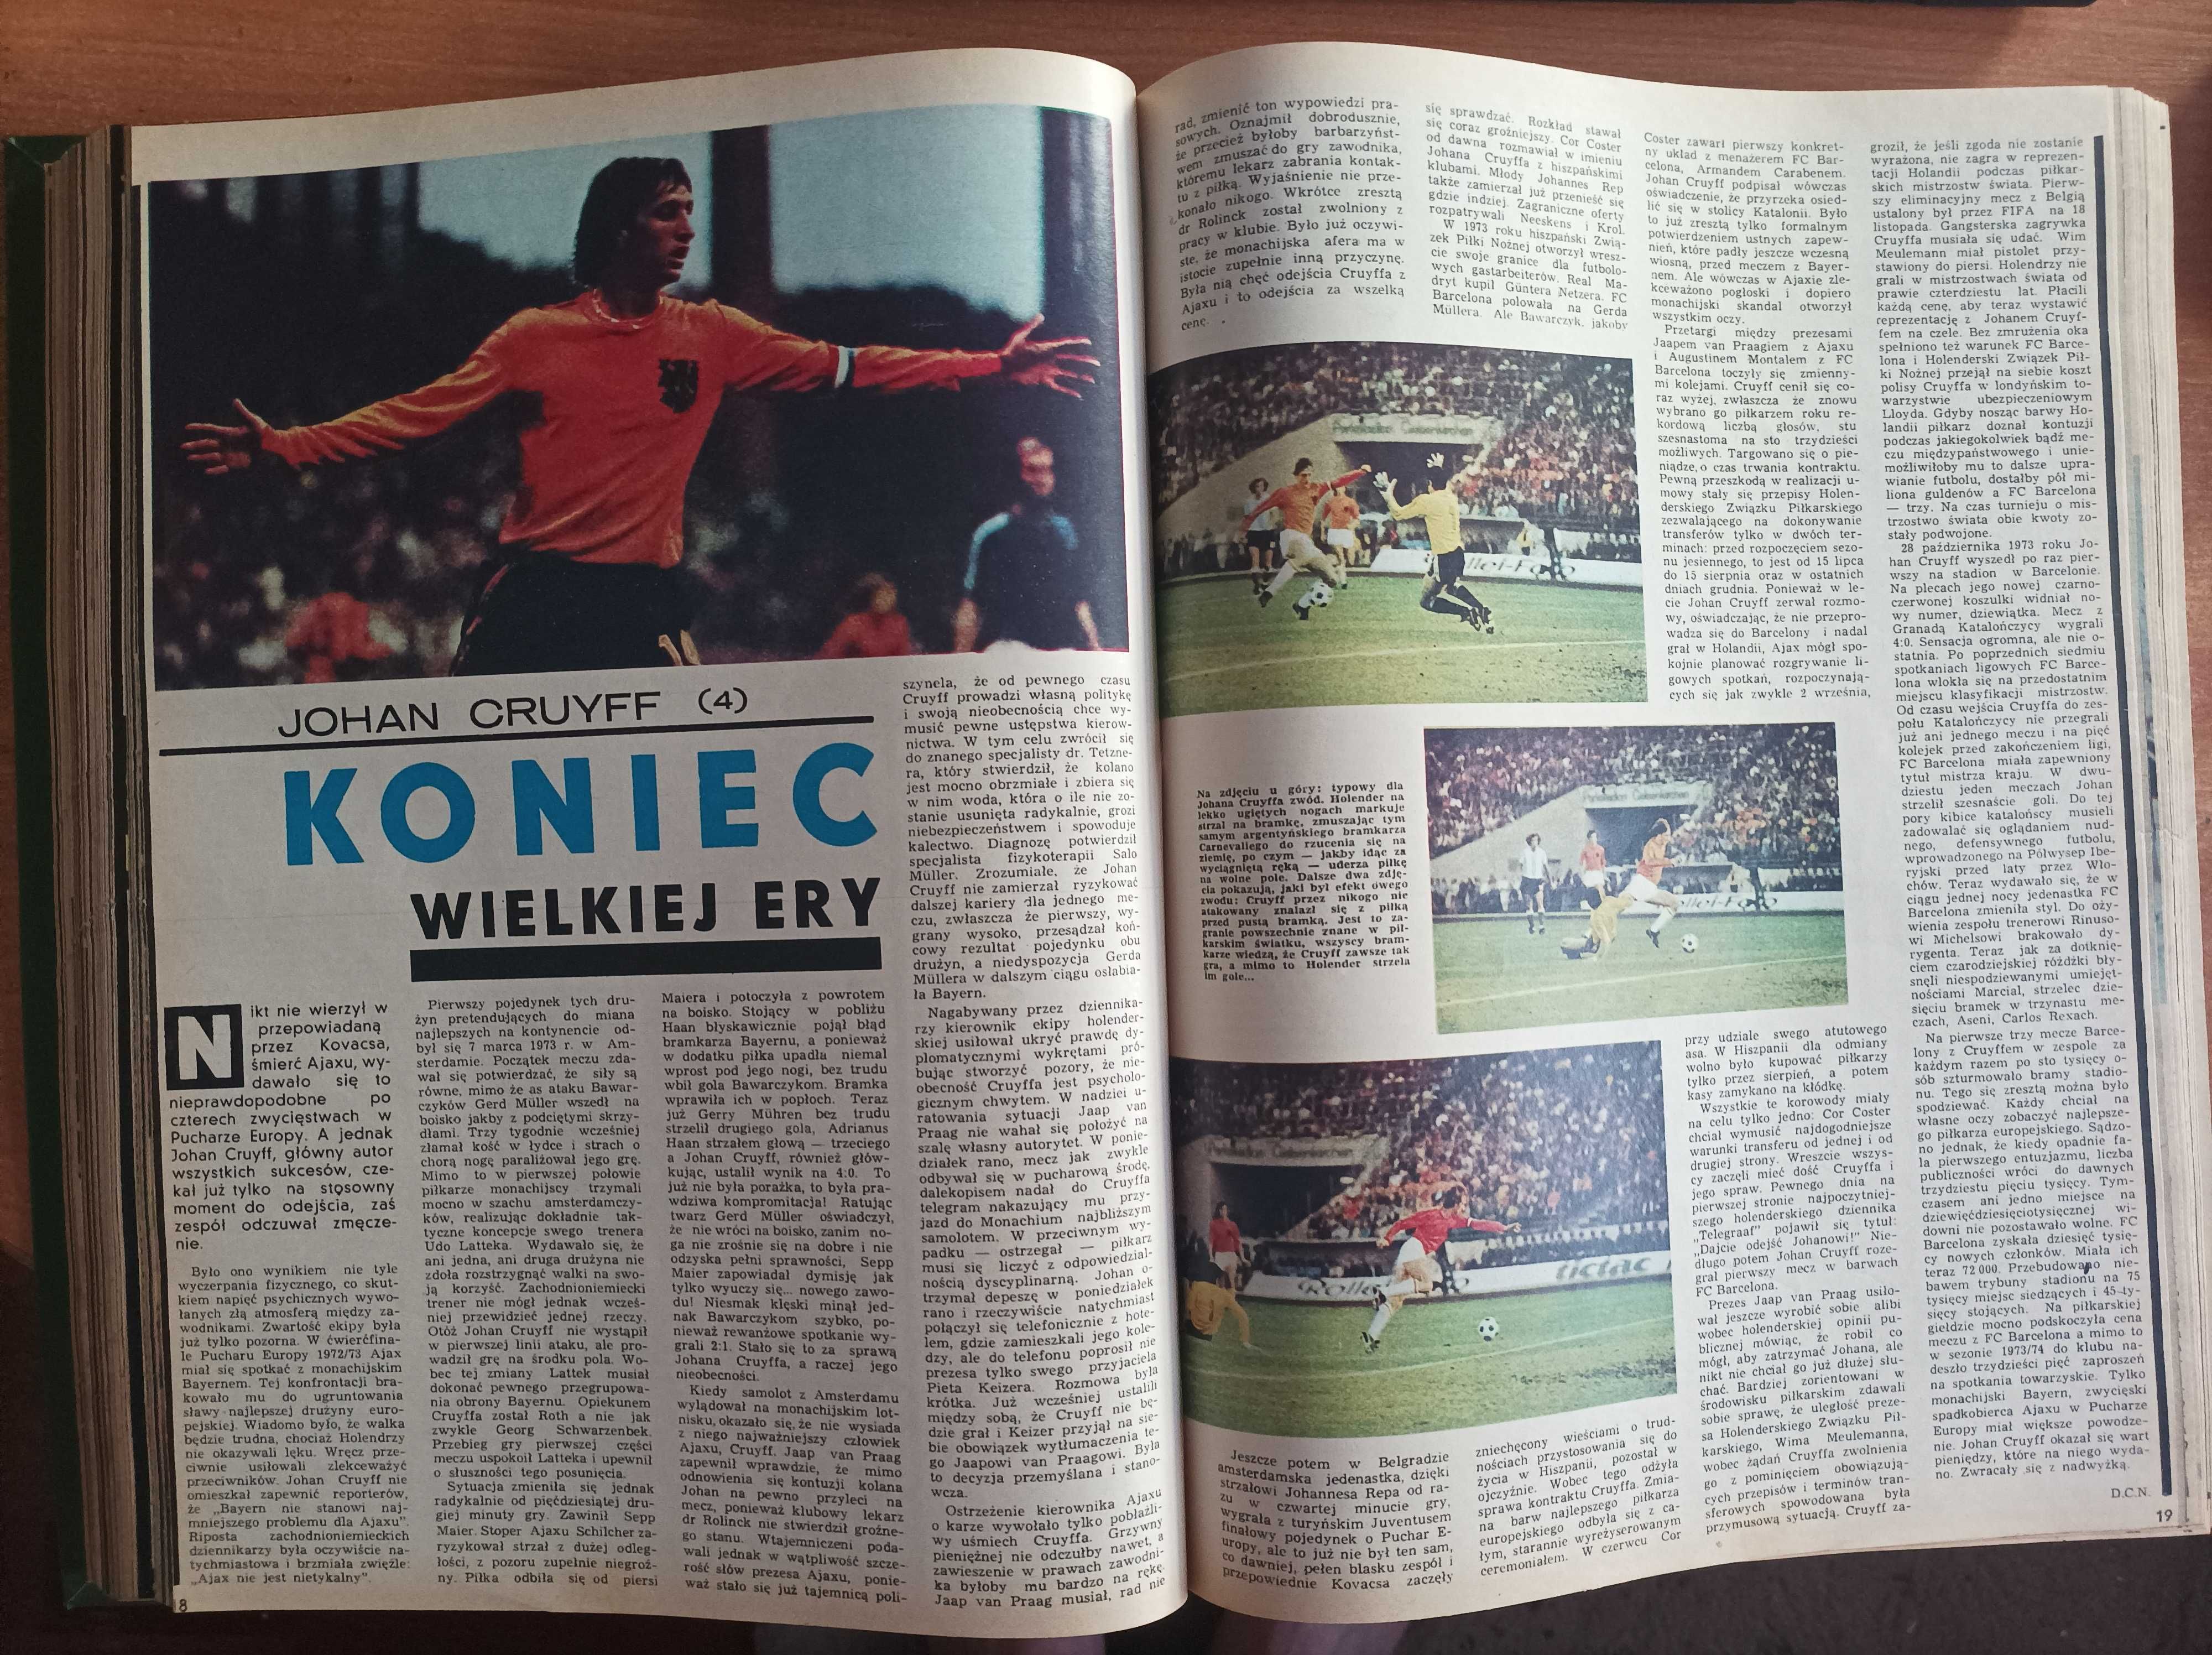 Tygodnik "Sportowiec" - rocznik 1975